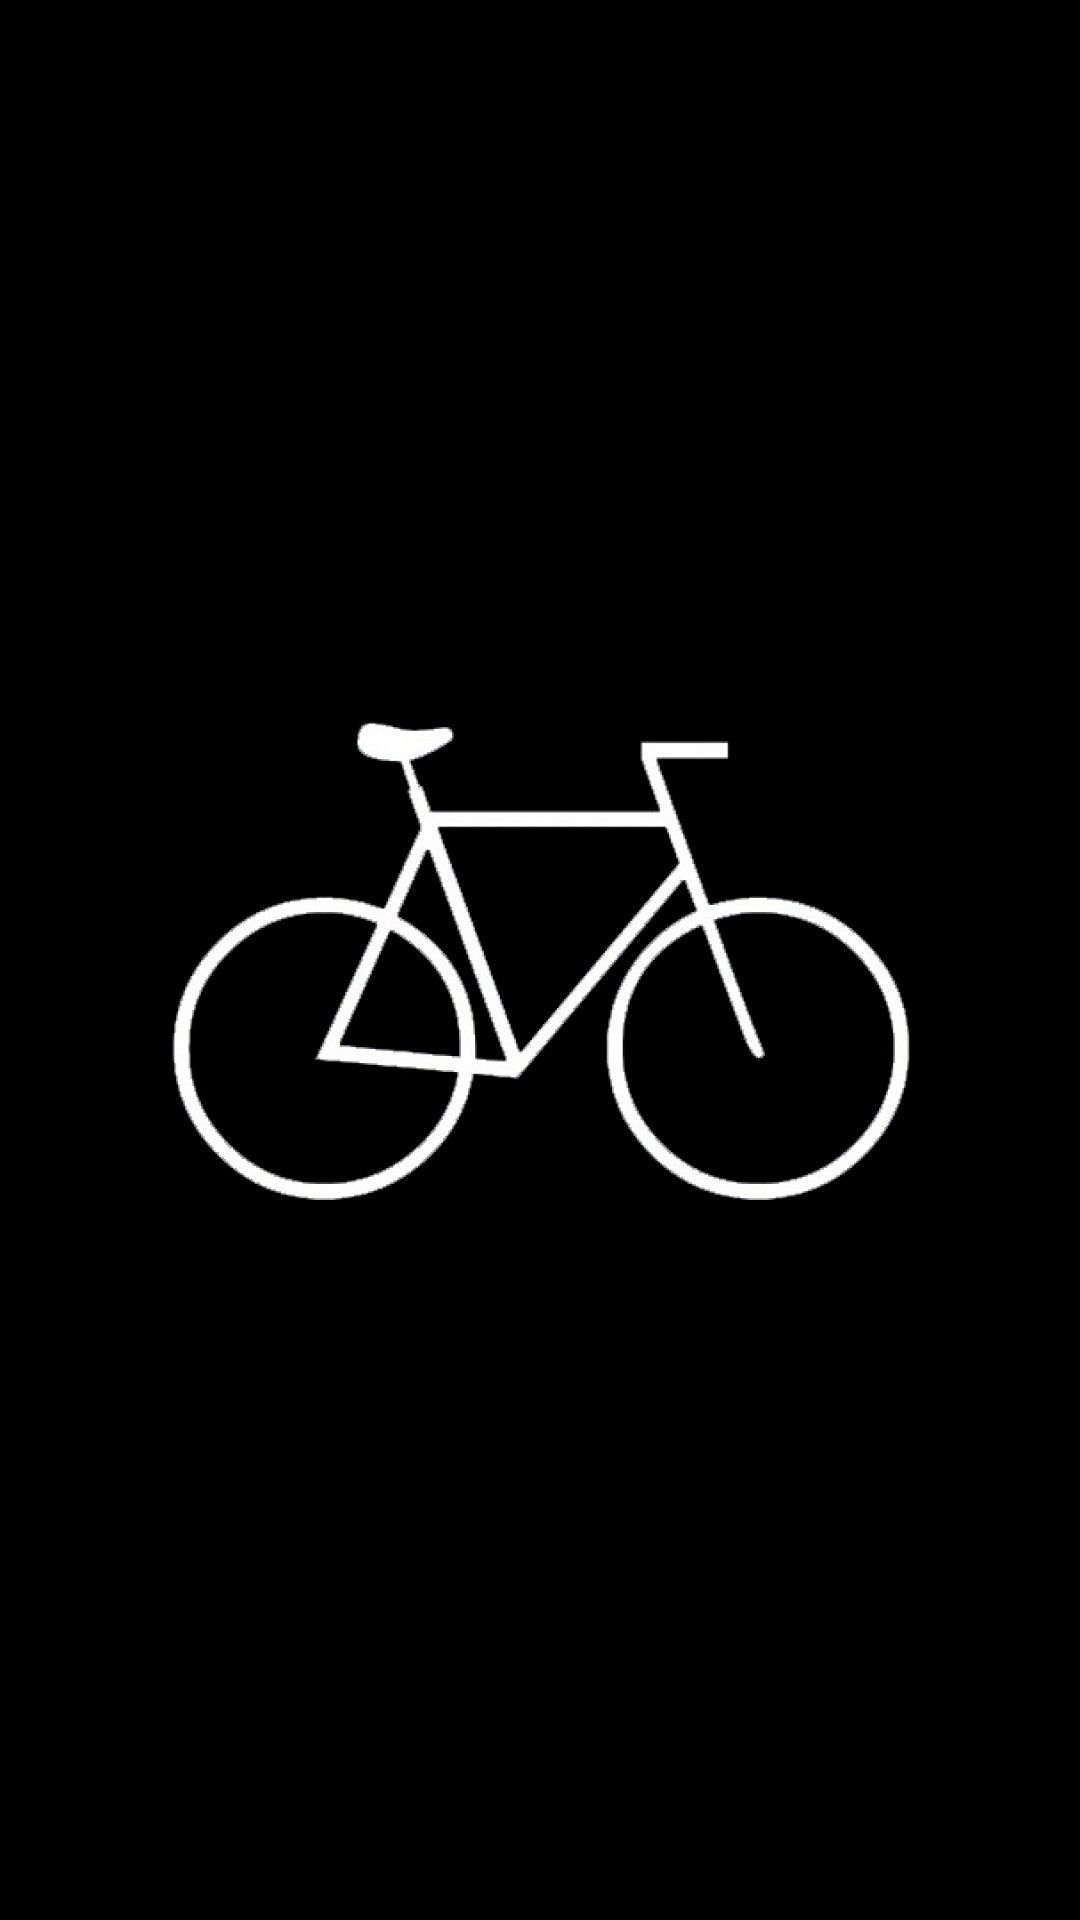 1080x1920 Cars u0026 Bikes iPhone 6 Plus Обои - Плоский простой велосипед Hipster iPhone 6 Plus HD обои | Iphone 6 plus wallpaper Татуировка с велосипедом Обои с велосипедом 